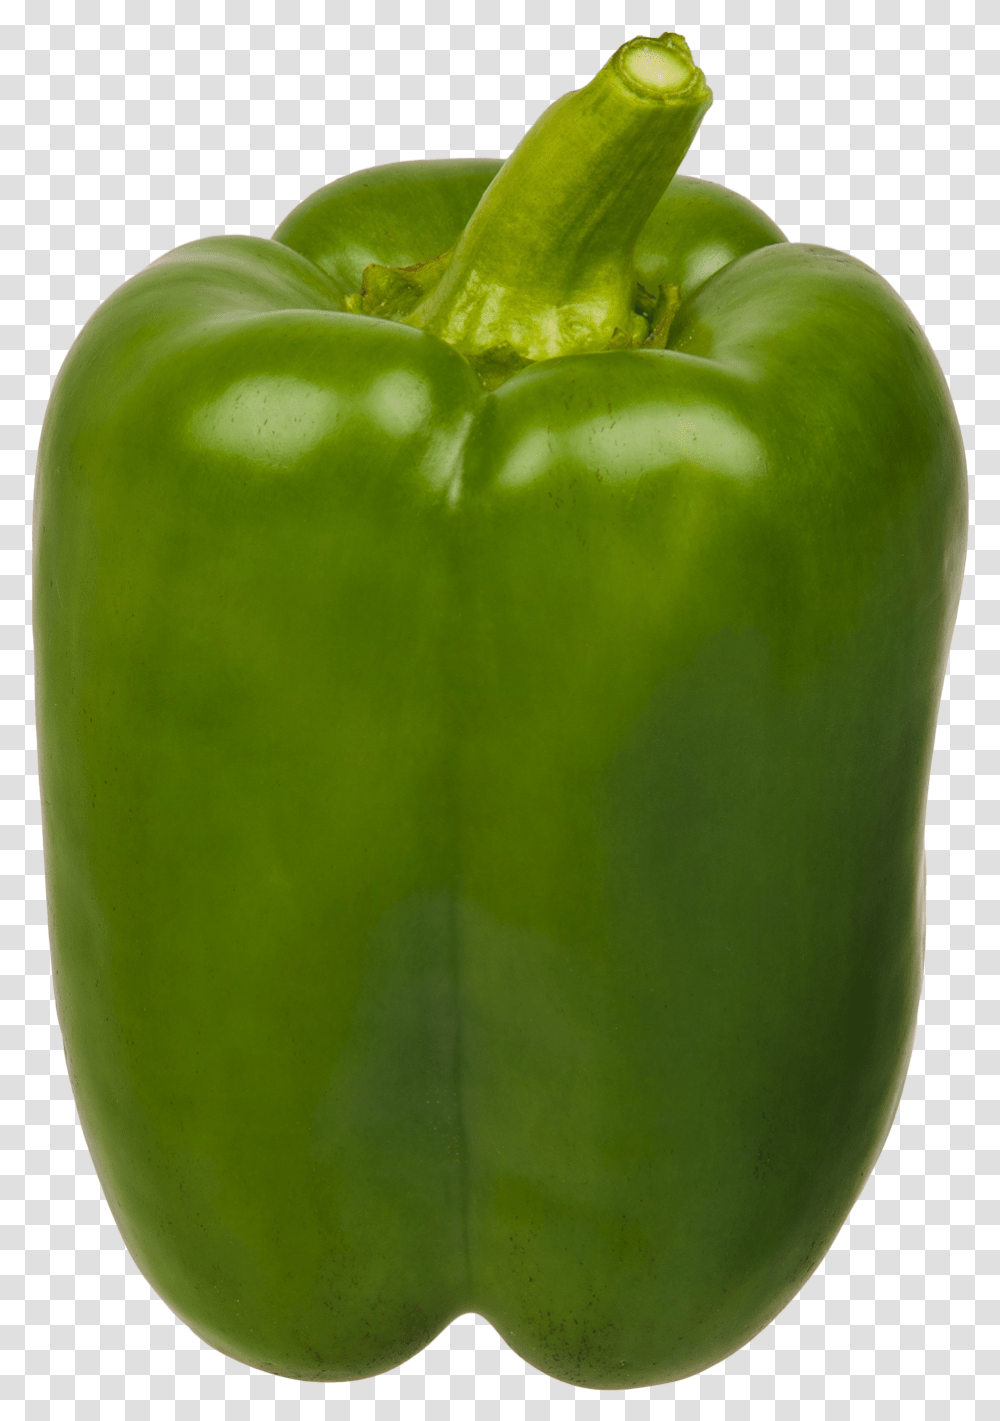 Bell Pepper Green, Plant, Vegetable, Food, Apple Transparent Png